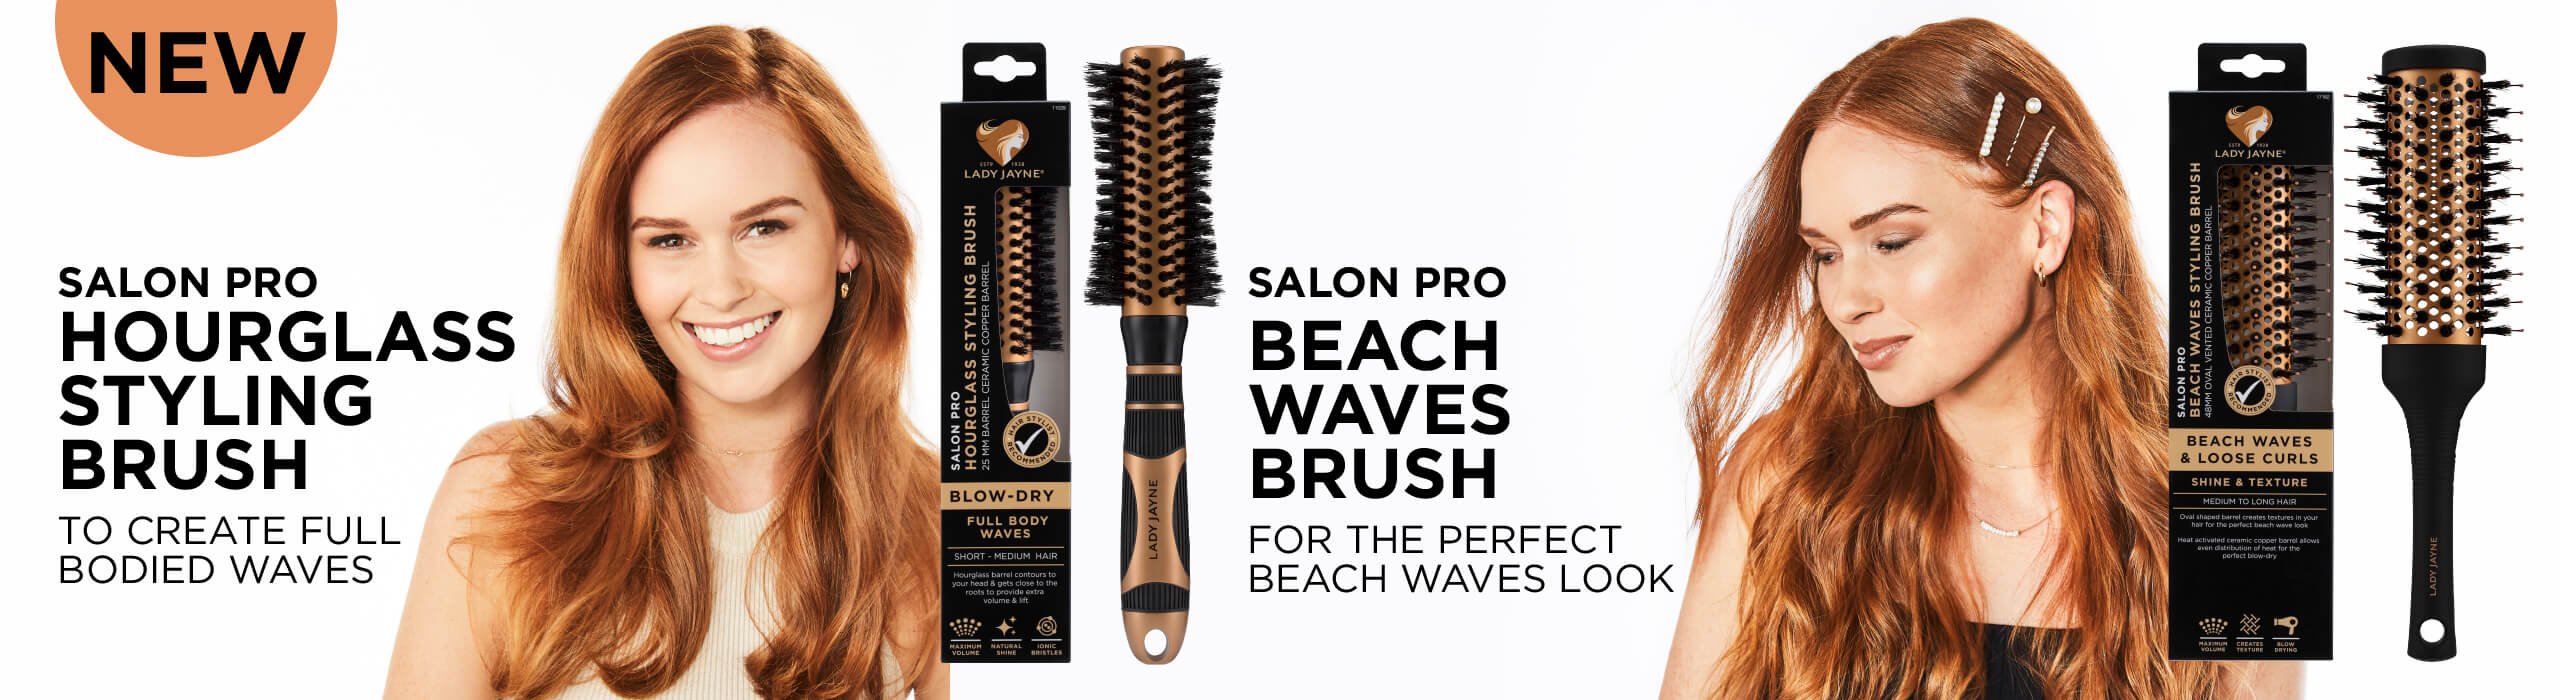 NEW Salon Pro Hourglass Styling Brush & Salon Pro Beach Waves Brush